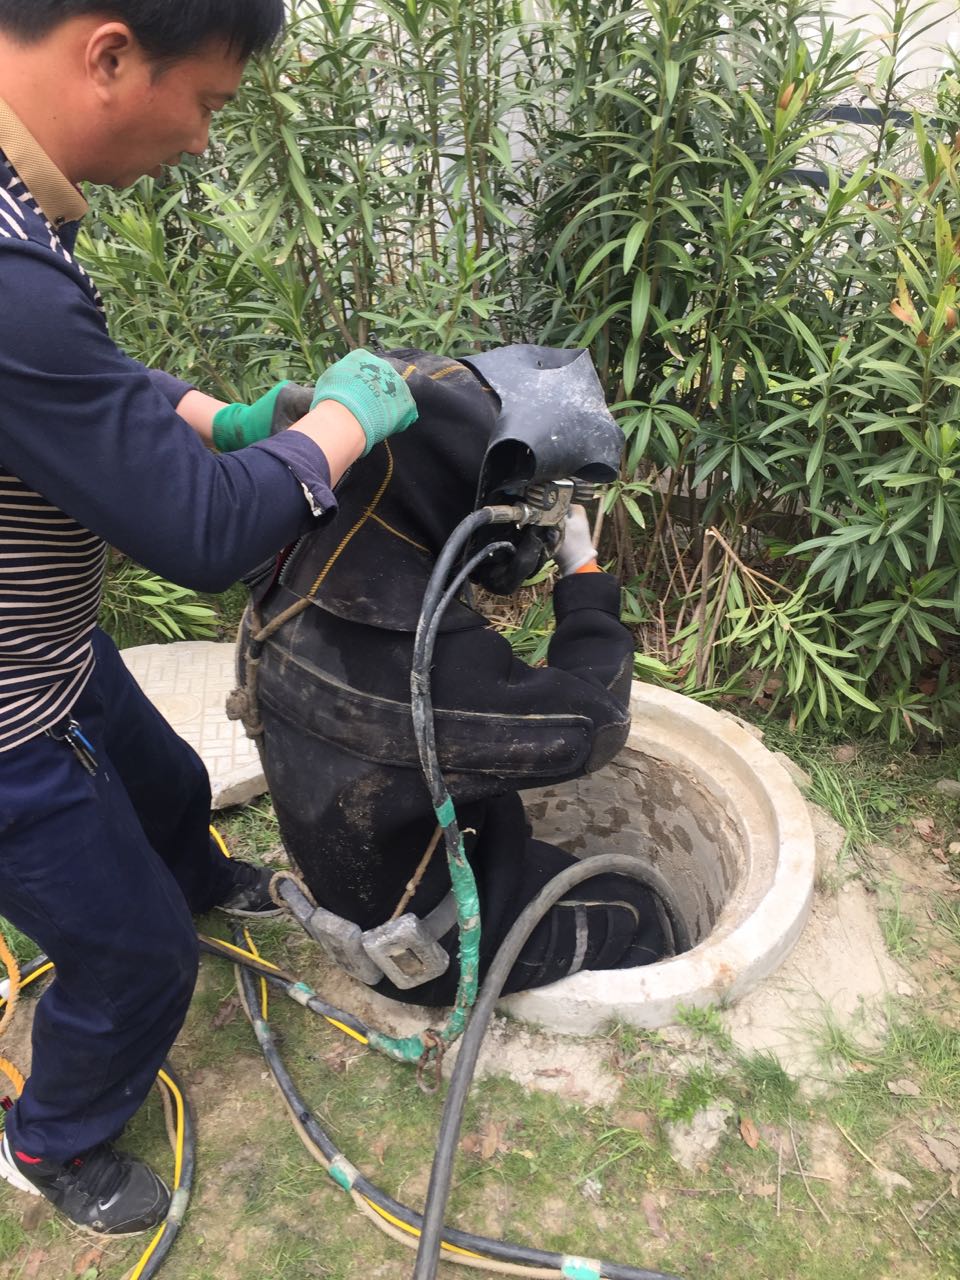 天津市水下开孔钻孔安装施工队-抓机遇